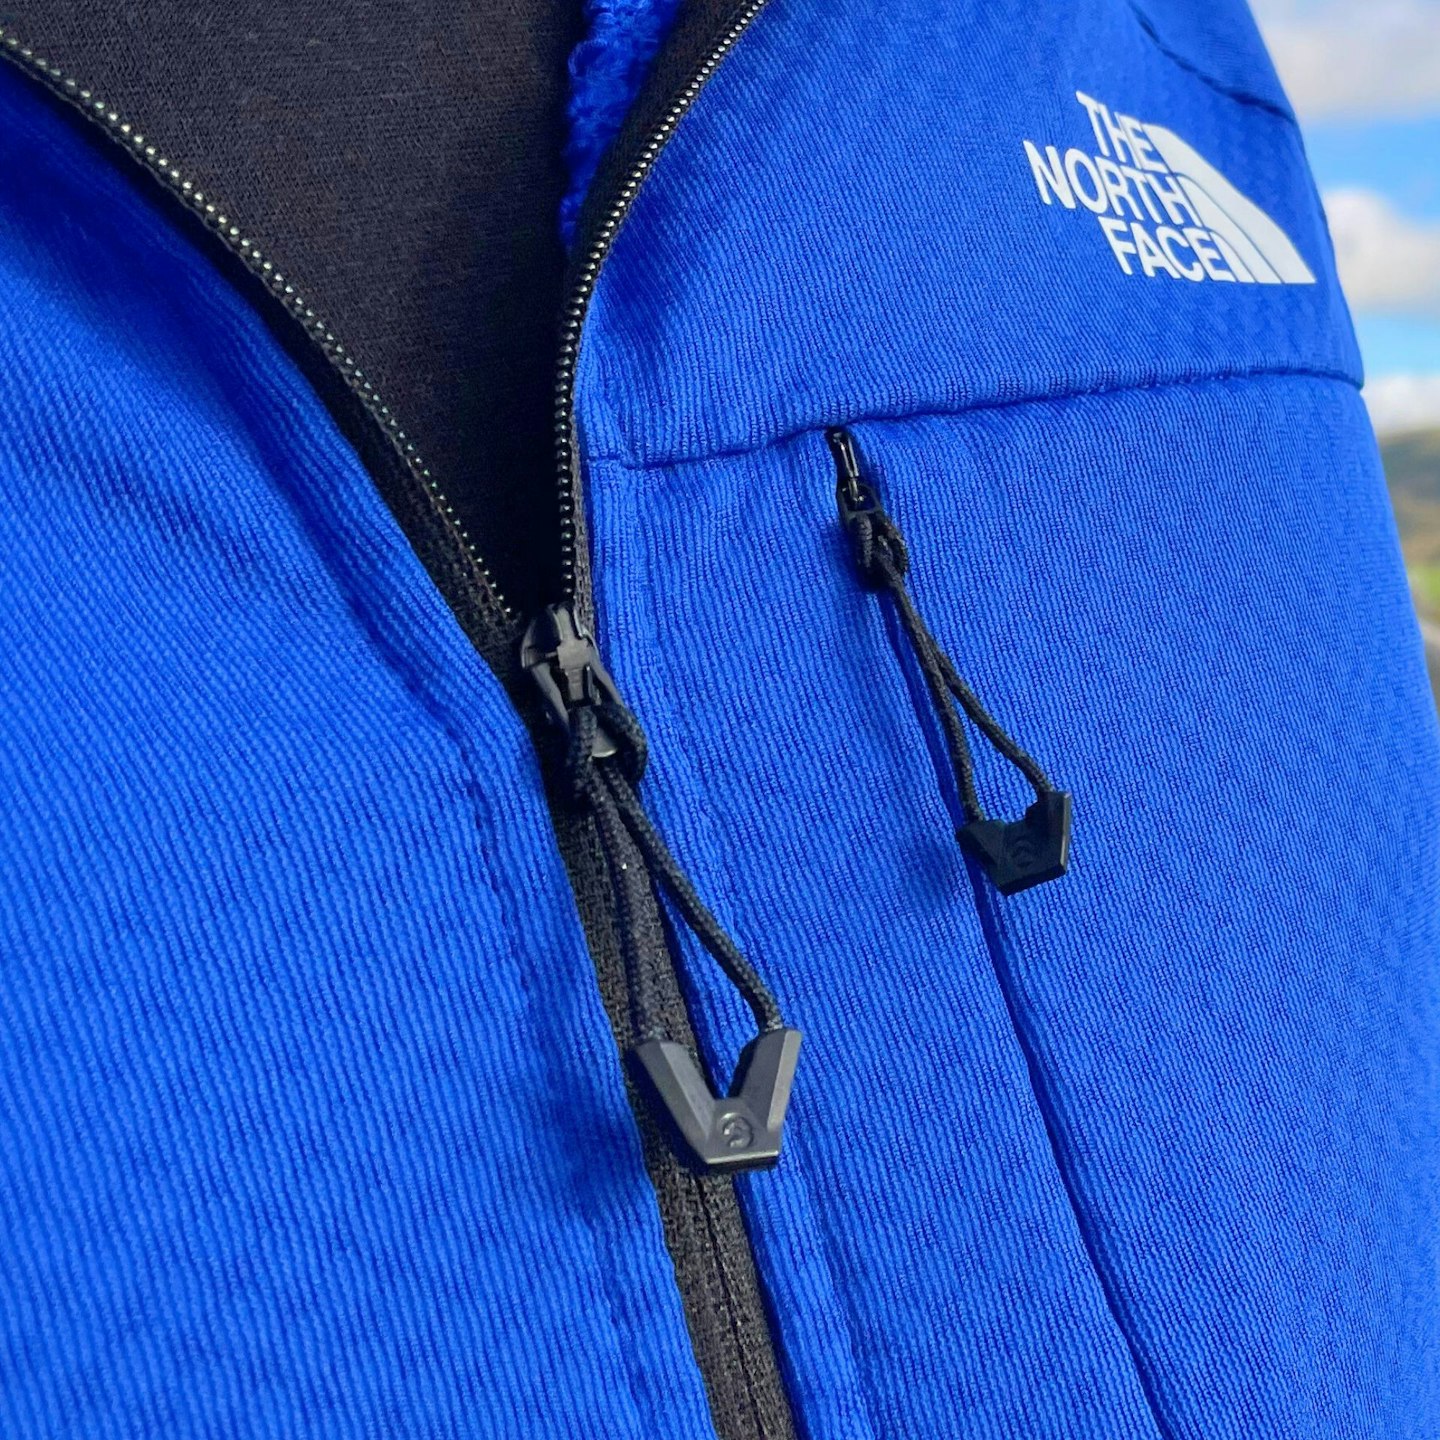 The North Face Summit Series Futurefleece Hooded Jacket zip